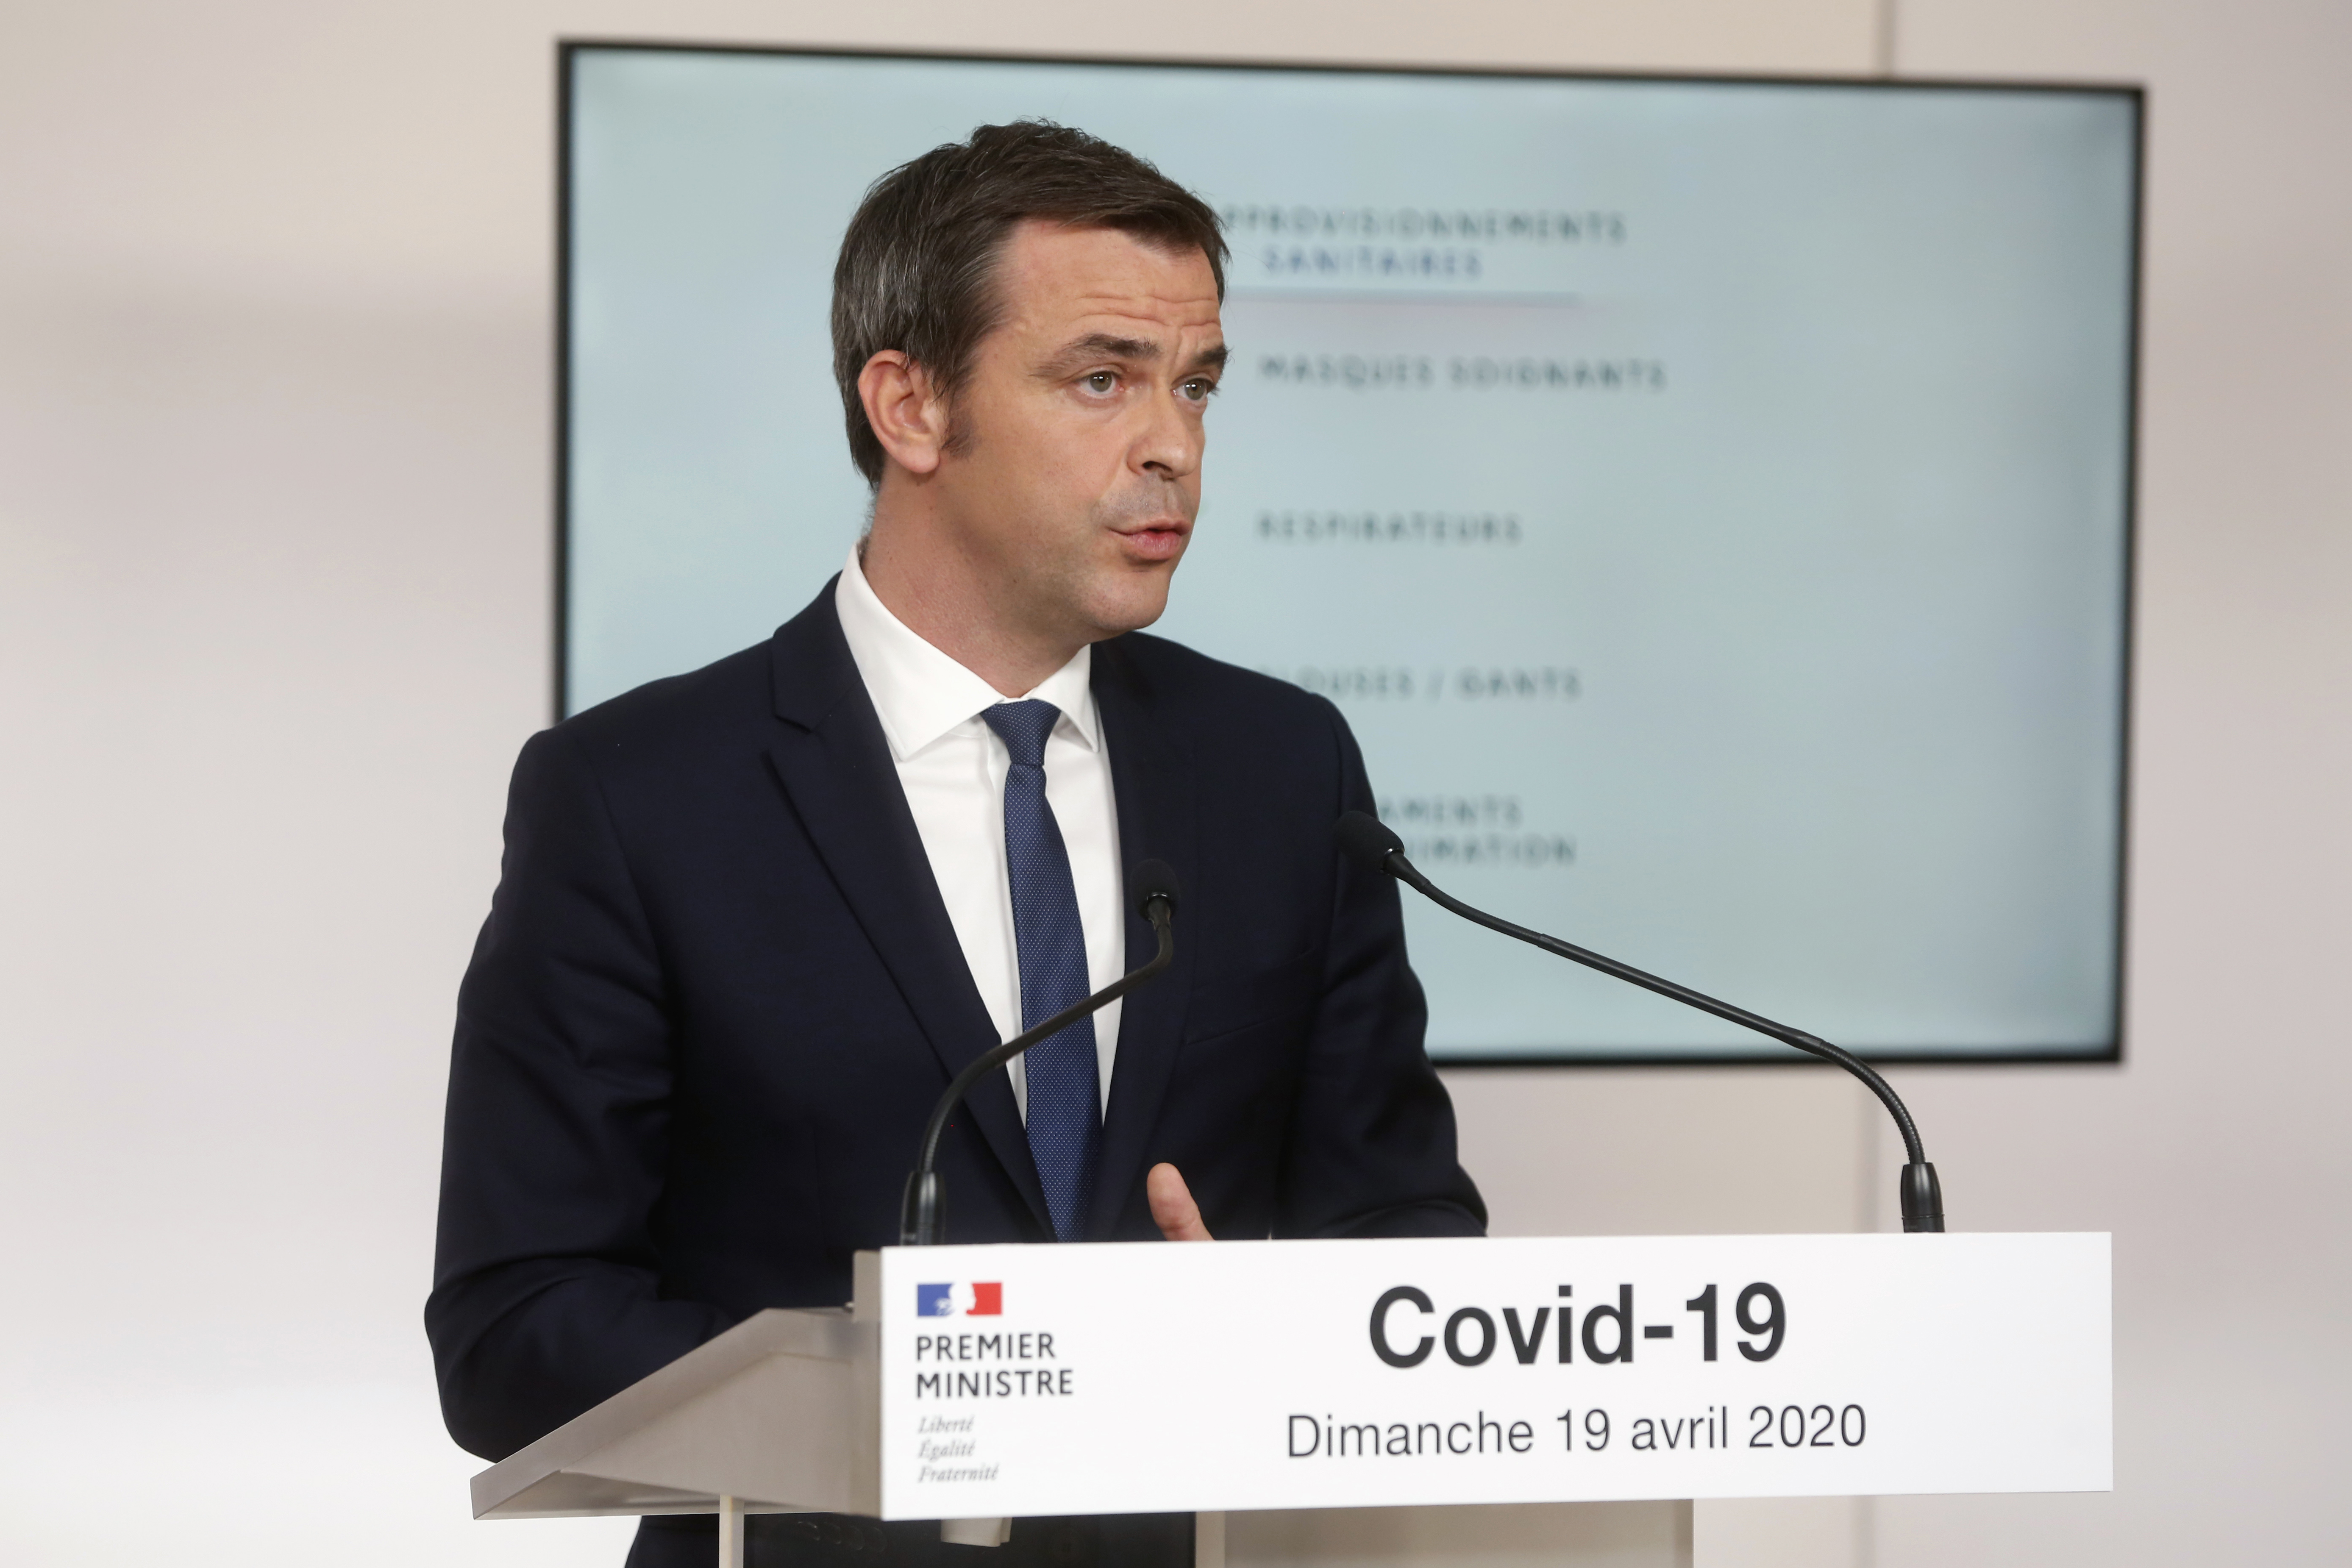 Halálos fenyegetéseket kapnak a francia képviselők az oltási igazolványok bevezetése miatt